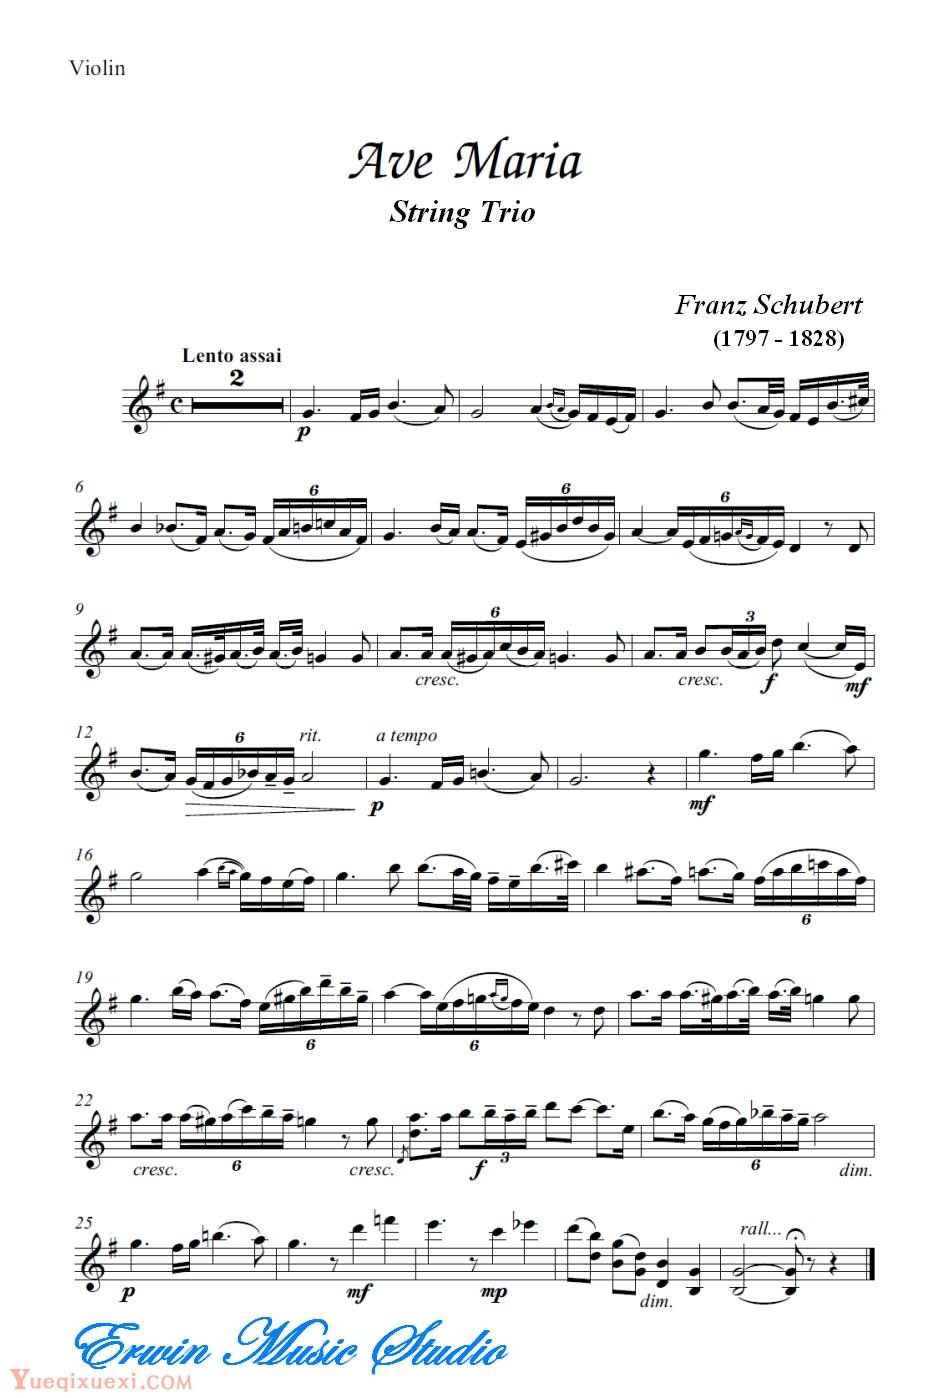 弗朗兹 舒柏特-圣母颂 弦乐三重奏分谱Violin  Franz Schubert,  Ave Maria